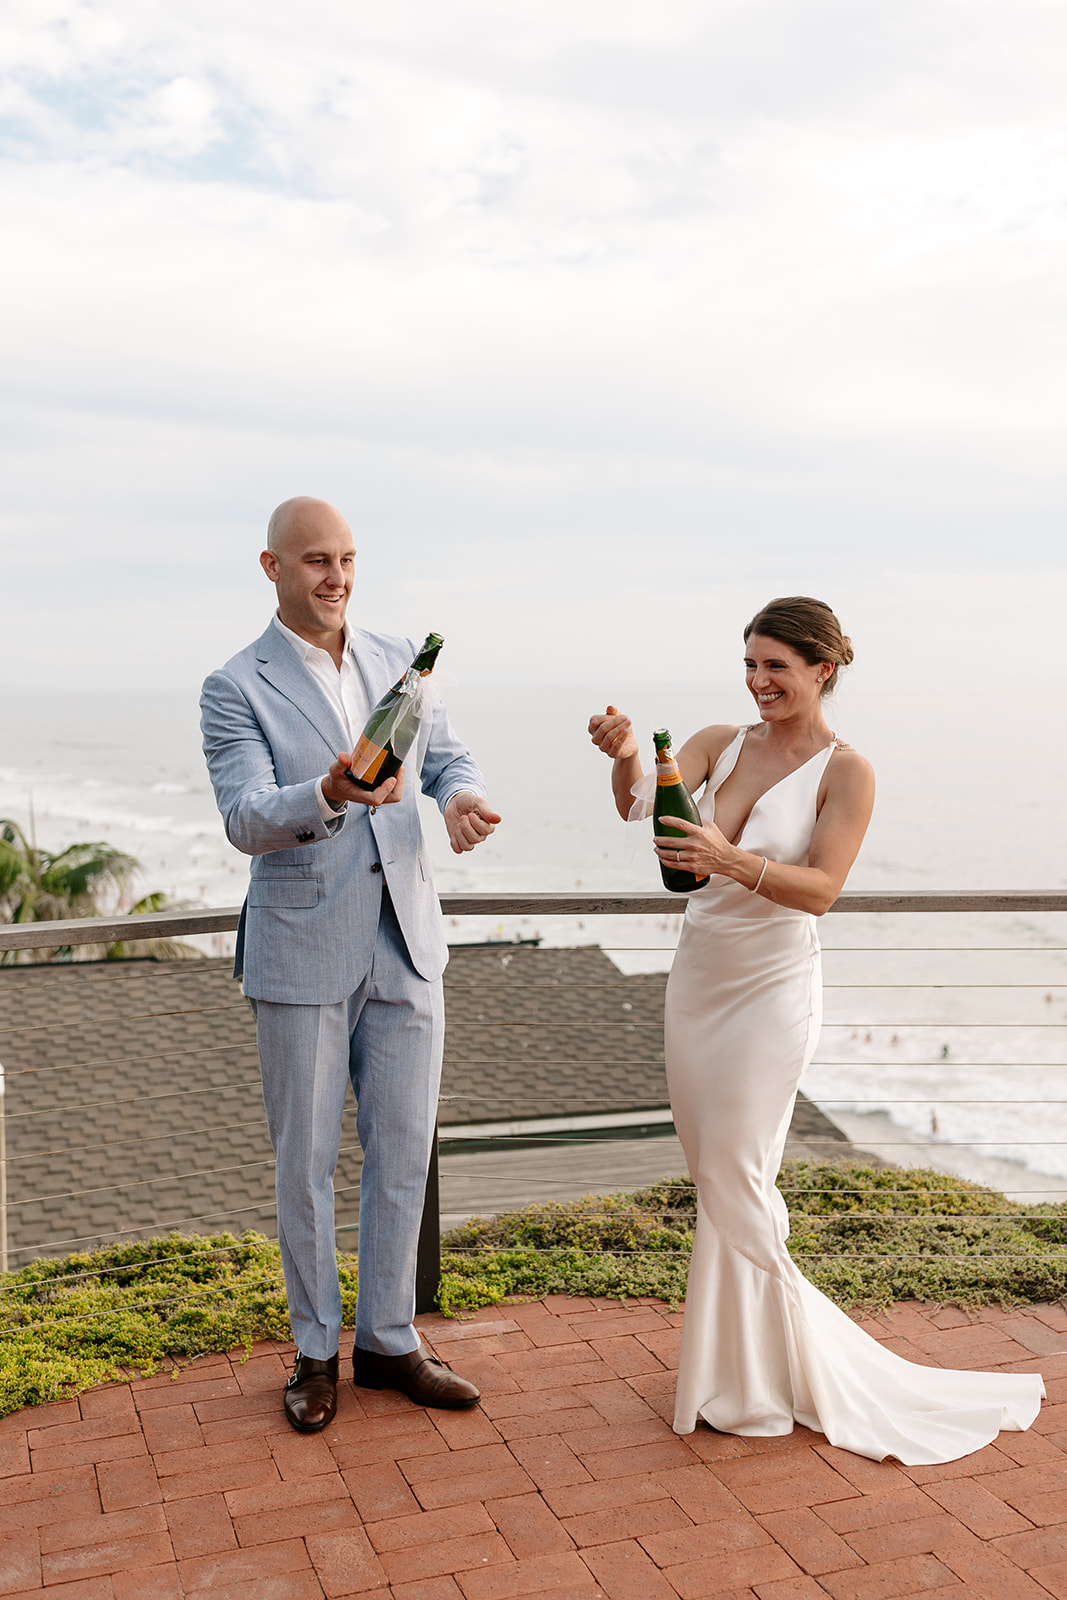 backyard beach wedding elopement encinitas southern california socal outdoor ceremony outdoor reception beach wedding